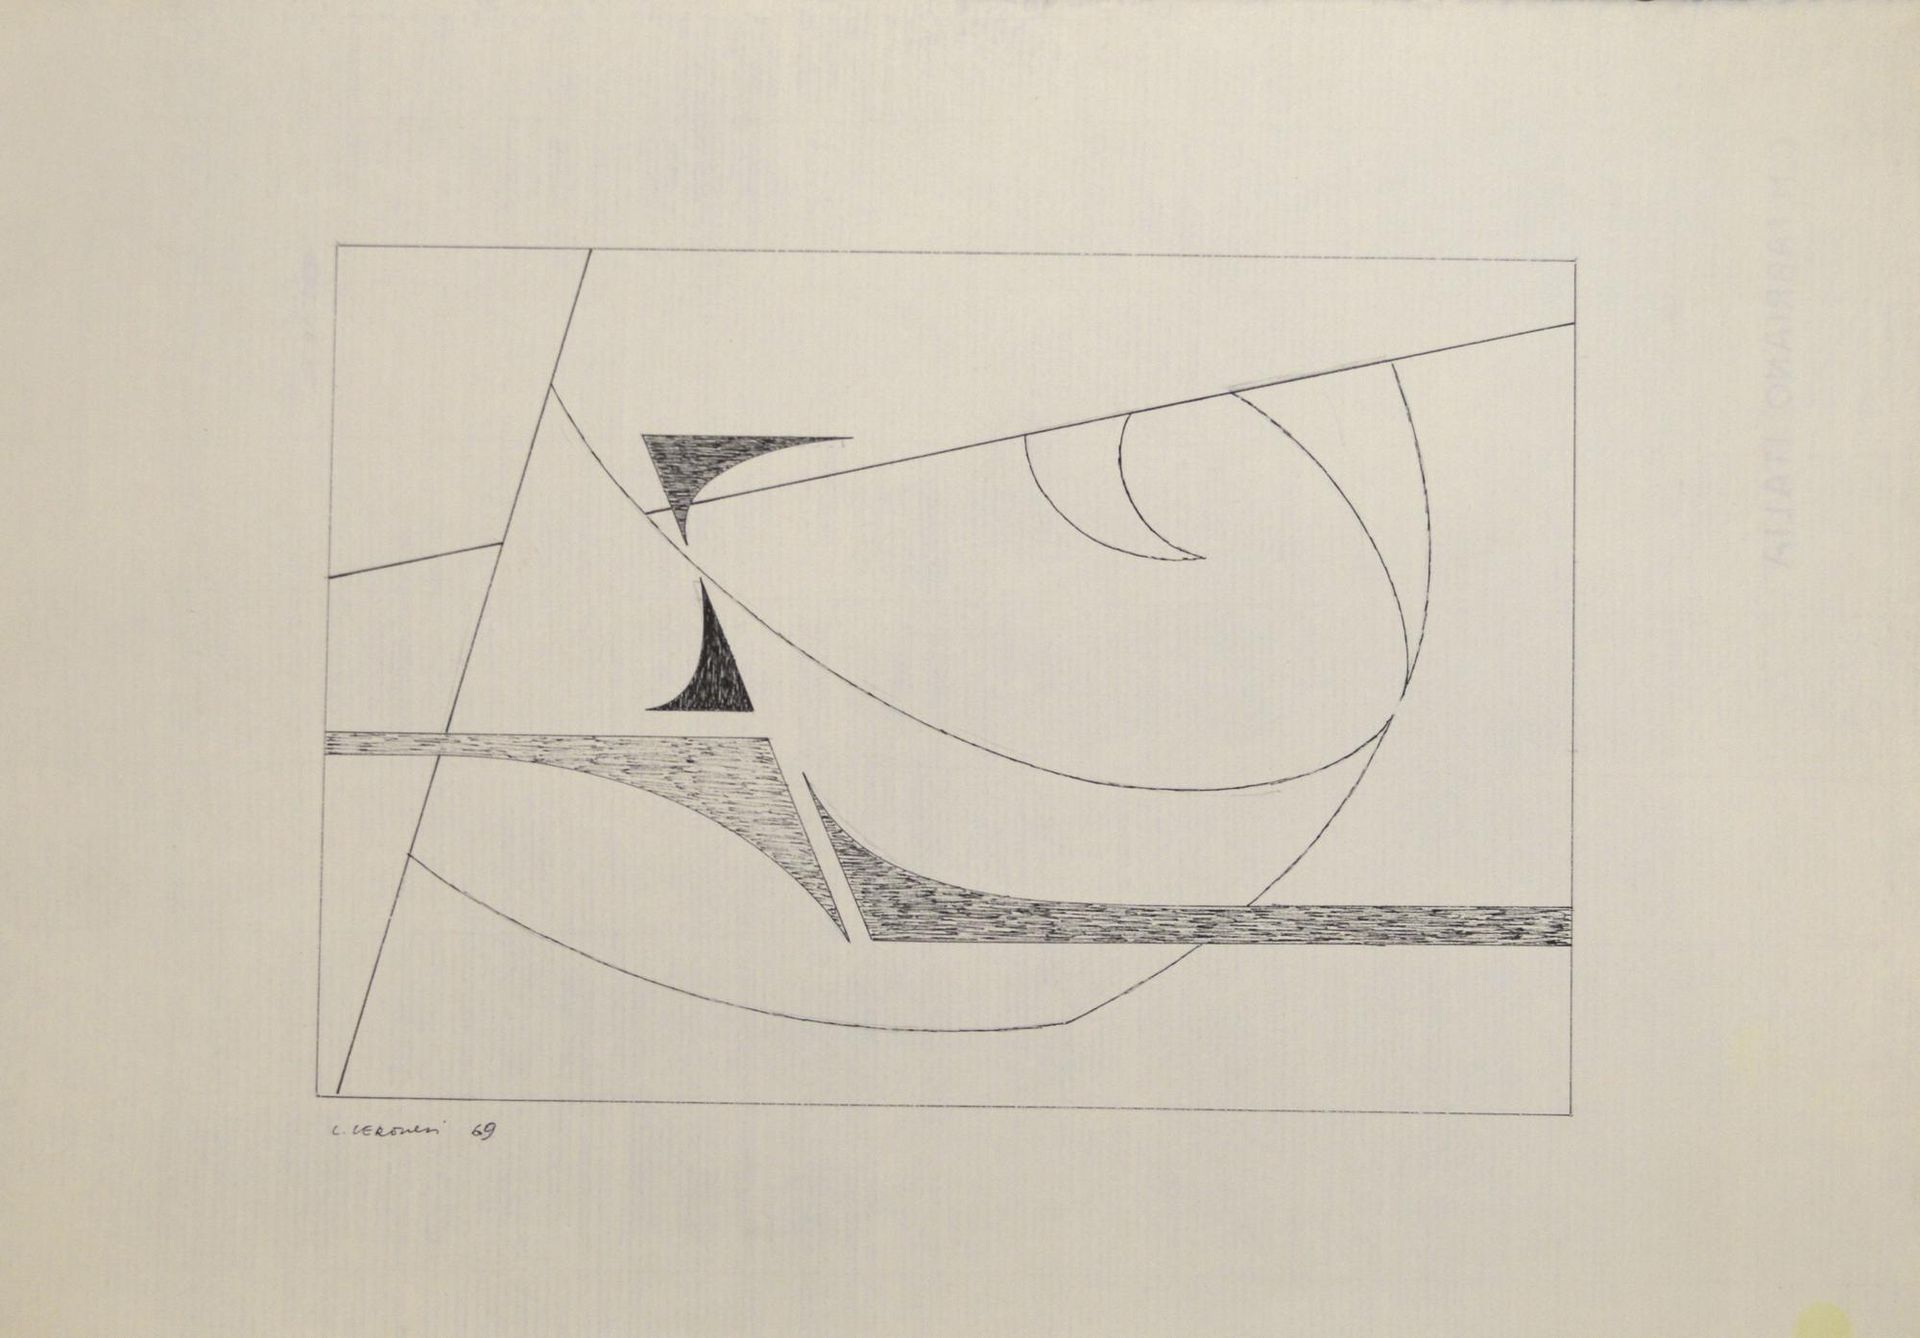 Luigi Veronesi Luigi Veronesi

ZUSAMMENSETZUNG

Tusche auf Papier, 33,5x48,5 cm
&hellip;